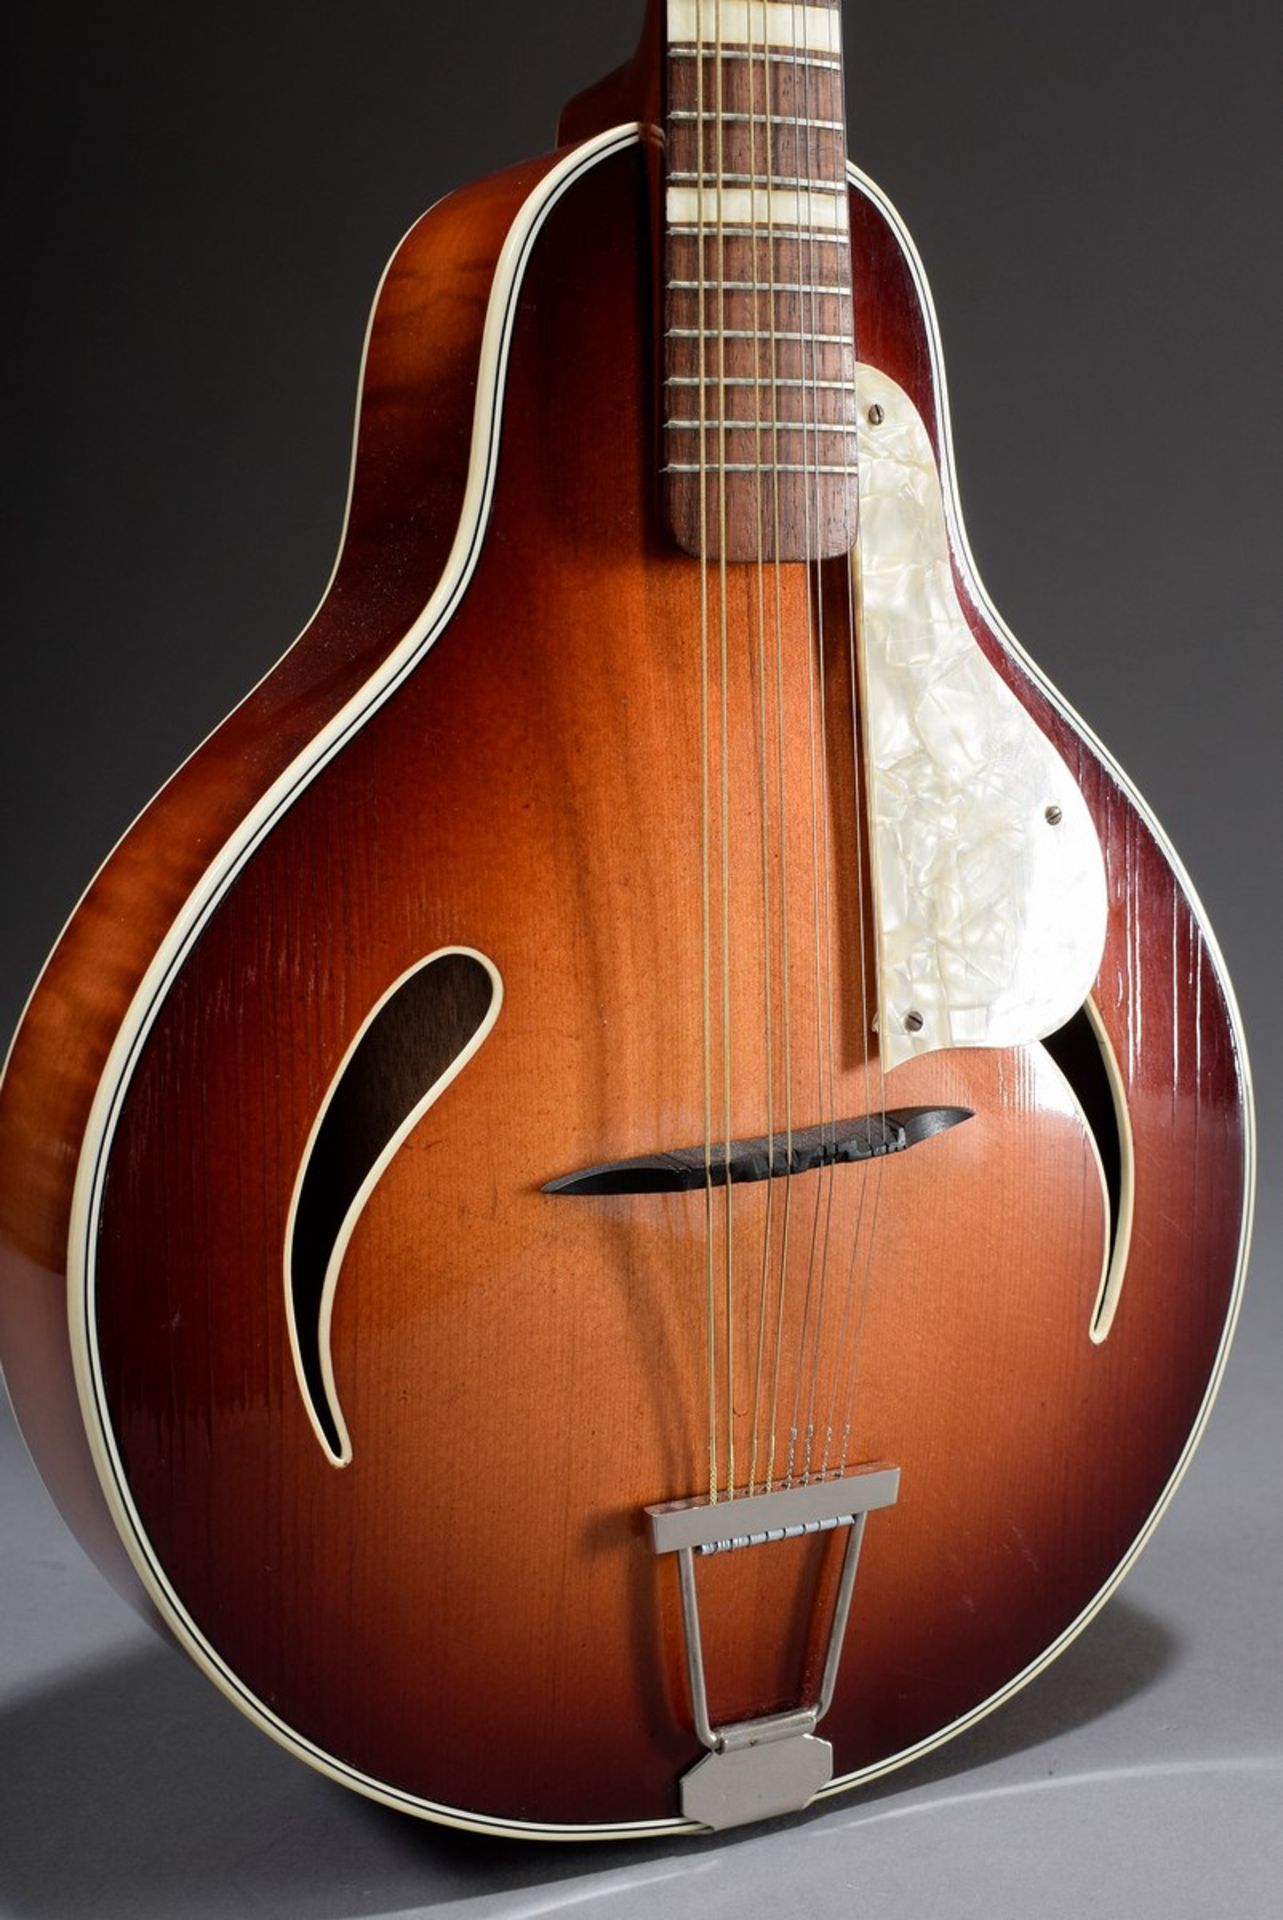 Jazz Mandoline "Cat Eye" von Höfner, Modell 542, um 1950/60, Korpuslänge 33cm, Gesamtlänge 63,5cm, - Bild 4 aus 10